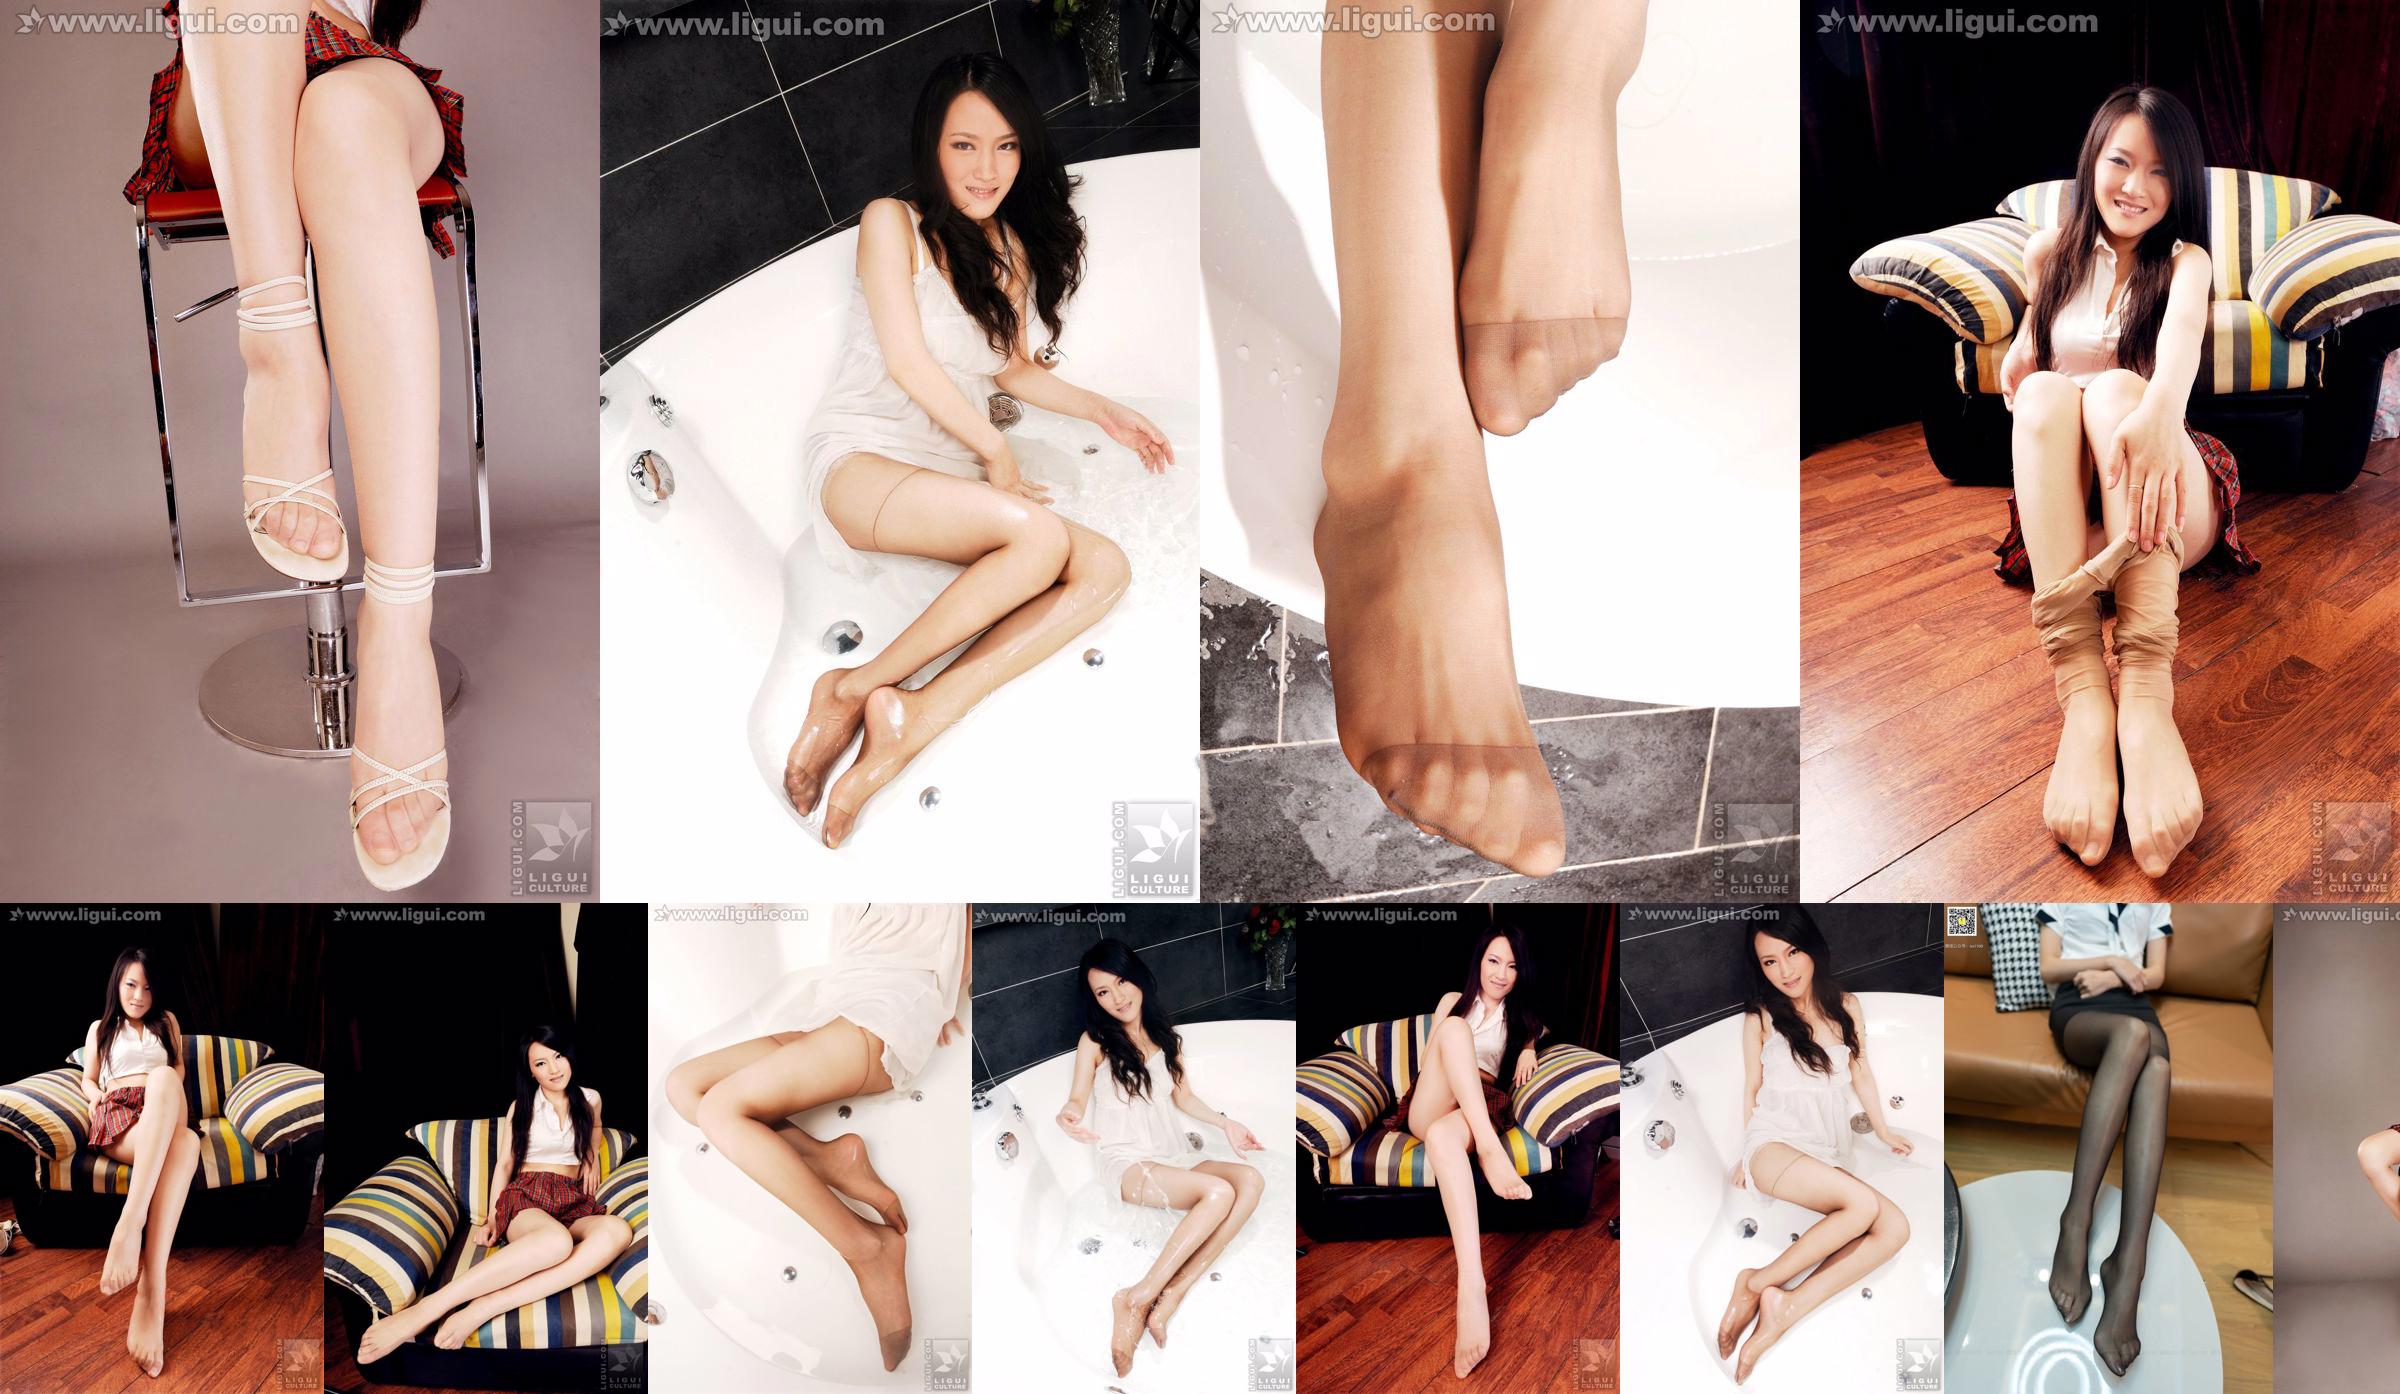 モデルウェンティン「ピュアで美しい足」[丽柜LiGui]シルクフット写真写真 No.3721b2 ページ6